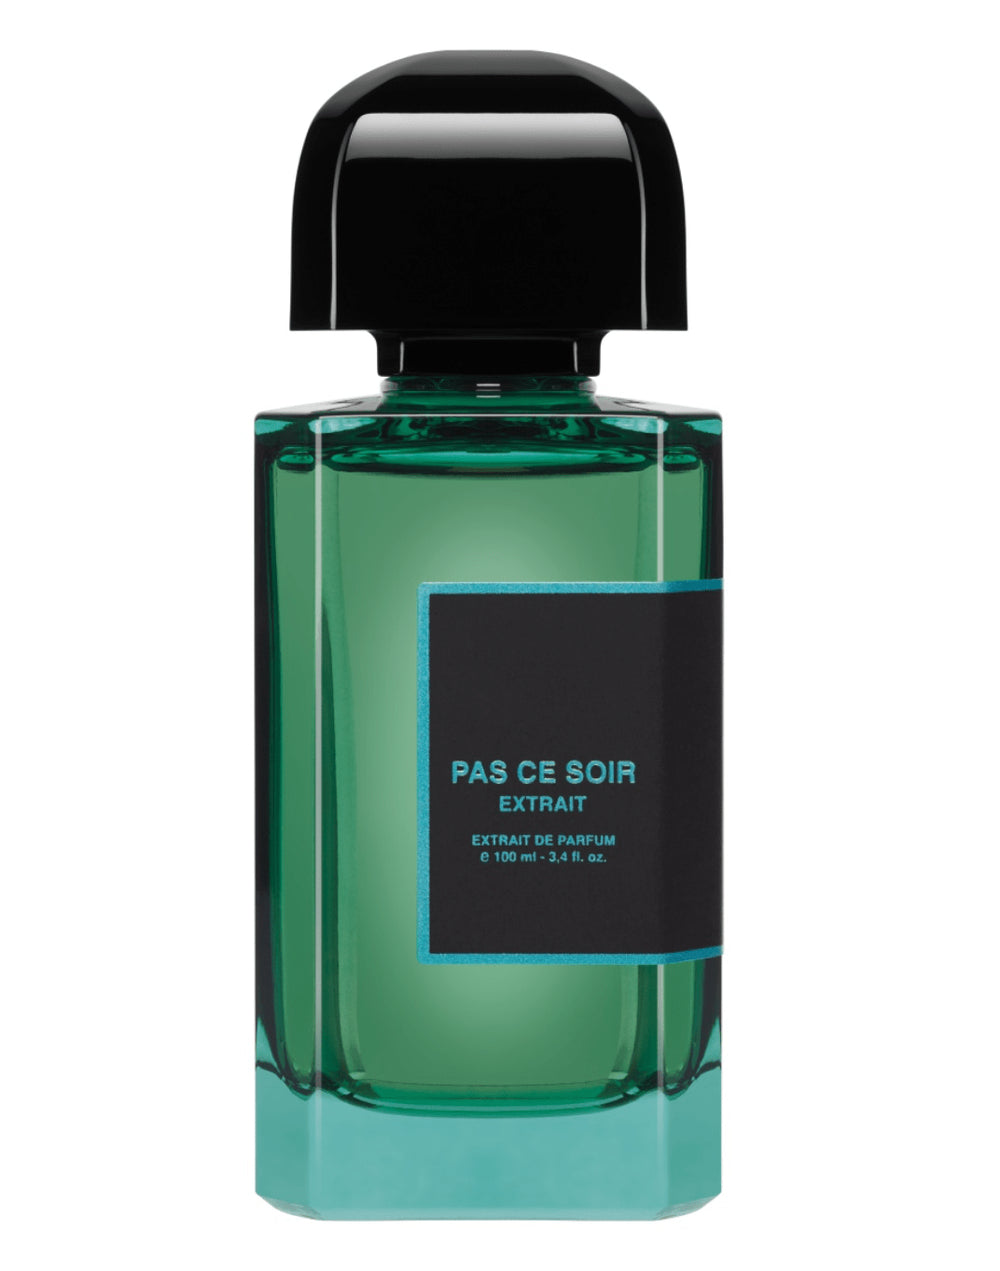 Pas Ce Soir Extrait by BDK Parfums